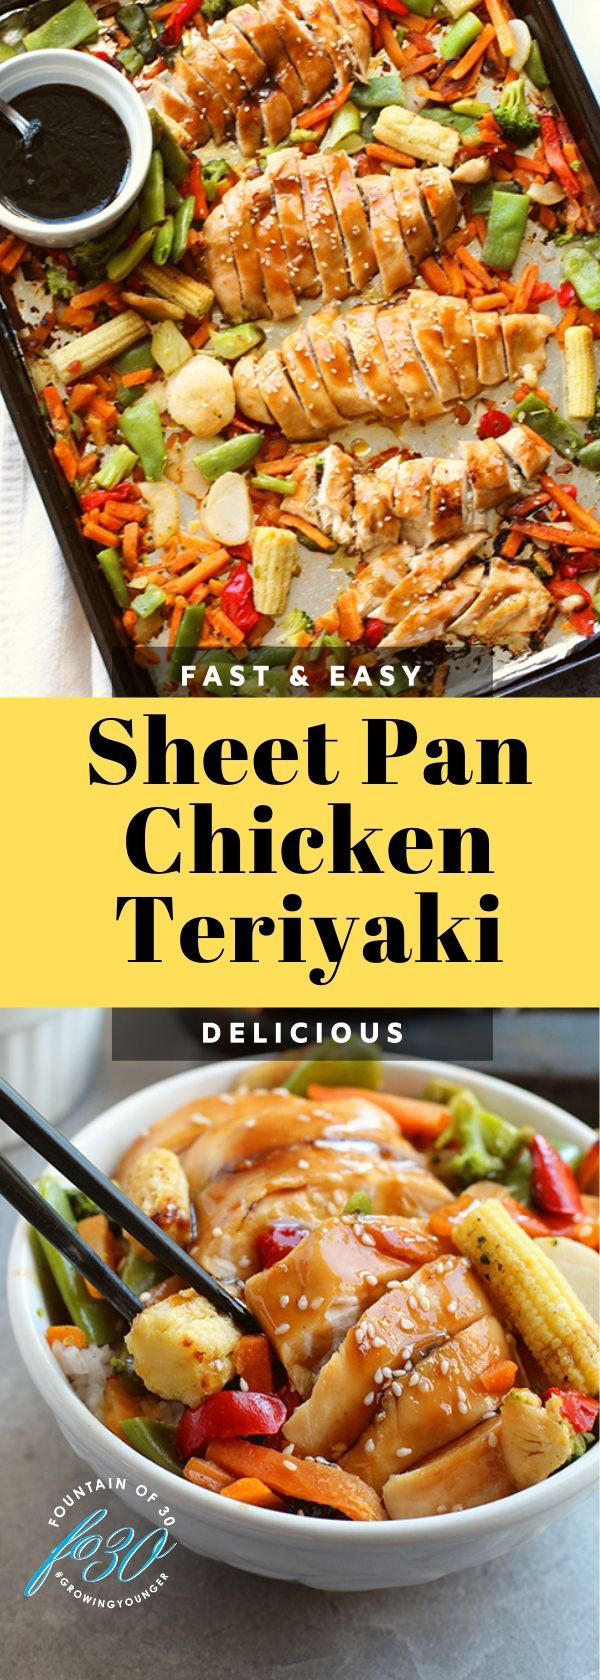 sheet pan chicken teriyaki fountainof30